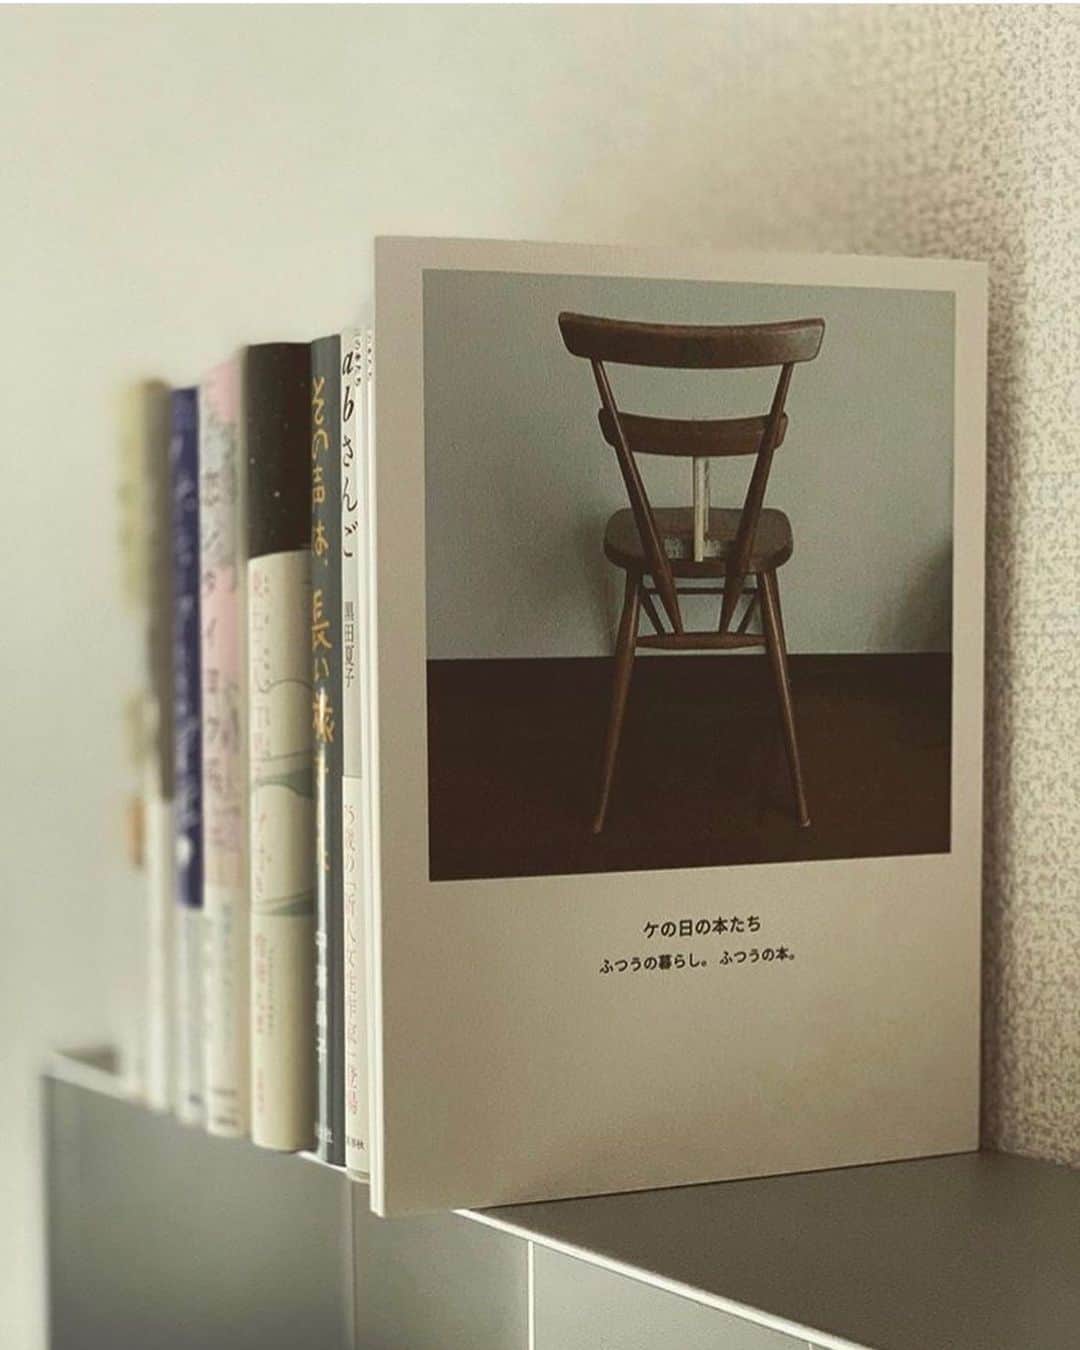 しまうまプリント【公式】フォトブック無料企画開催中さんのインスタグラム写真 - (しまうまプリント【公式】フォトブック無料企画開催中Instagram)「本が好き。 ・ ・ 本日ご紹介するのは @kenohibon さまのフォトブックです✨ ・ ・  @kenohibon さまが本のある生活を 本当に大切に思っていることが伝わってくる 素敵なフォトブックになりました。 ・ こんな素敵な作品を見ると 本が読みたくなっちゃいますね👀 ・ このフォトブックも【本と羊としまうま展】に出展予定の作品なんです✨ 「本と羊としまうま展」ではこの作品以外にも とっても素敵なフォトブック作品が並びます☺️💕 皆さんも是非足を運んでみてくださいね。 ・  @kenohibon さま、 素敵なご投稿ありがとうございました！ ・ ・ 【本と羊としまうま展🐏】 本屋さんで開催する「本」がテーマのフォトブック展 日時:2019年11月23日(土)~11月24日(日)12:00~18:00 場所:Readin'Witin'BOOK STOR 〒111-0042 東京都台東区寿2-4-7 ・ ・ ・ #Repost from @kenohibon ・・・ Sat. 16. Nov. ・ #フォトブック #本と羊としまうま展 ・ 本にまつわるフォトブックを… と、 お声かけをいただいた。 ・ ［しまうまプリント］さん、 福岡の書店 ［本と羊 ］さんの コラボによる、 本のフォトブック展に 参加することに いたしました。 ・ ・ もとい 本がすきで、 生活の風景がすきで、 こんなIGをはじめた。 だから、 このおはなしを いただいた時、 このIG そのまんまの写真で、 フォトブックを作ろう… そう思った。 ・ ところが、 ちょうどタイミングは ずばり機種変 時。。 フォトアルバムは あたらしいスマホに ちゃんと 移せたのだけれど、 IGの写真のみを 貯めておいたアプリは 移行できず… ・ 結果 ほとんどすべて あらたに撮り直すという。。ww （アイコンと表紙、 べつの写真なんだよ！ わかんないベー  ww） 煙が出そうな ドタバタ撮影となった（笑） ・ ・ フォトブックなんて、 アルバムに写真をさすのと 変わらない… かってにそう思い、 今まで作ったことは なかった。 ・ なんて おばか だったことよ… 今回、 思い知らされた。 ・ 本がすき…というのは、 読むのが すき。 そのほかに、 本そのものが すき… というのが、あること。 ・ たとえ フォトブックではあっても、 本になるというのは 単純に うれしい。 本のかたちを成した 稚拙な写真たちは、 スマホの画面や バラバラ見の時とは ちがう よろこびを わたしにもたらしてくれた。 ・ ・ 開催日：2019年11月23日（土）24日（日）  開催場所：Readin’ Writin’ BOOK STORE ・ #しまうまプリント  #本と羊 #readinwritinbookstore ・ #読書#読書記録#本#bookstagram #instabook#読書倶楽部#本のある暮らし#本が好き#暮らし#暮らしを楽しむ#マンション暮らし#みんなの暮らし日記online#インテリア#雑貨#言葉#徒然」11月21日 18時17分 - shimaumaprint